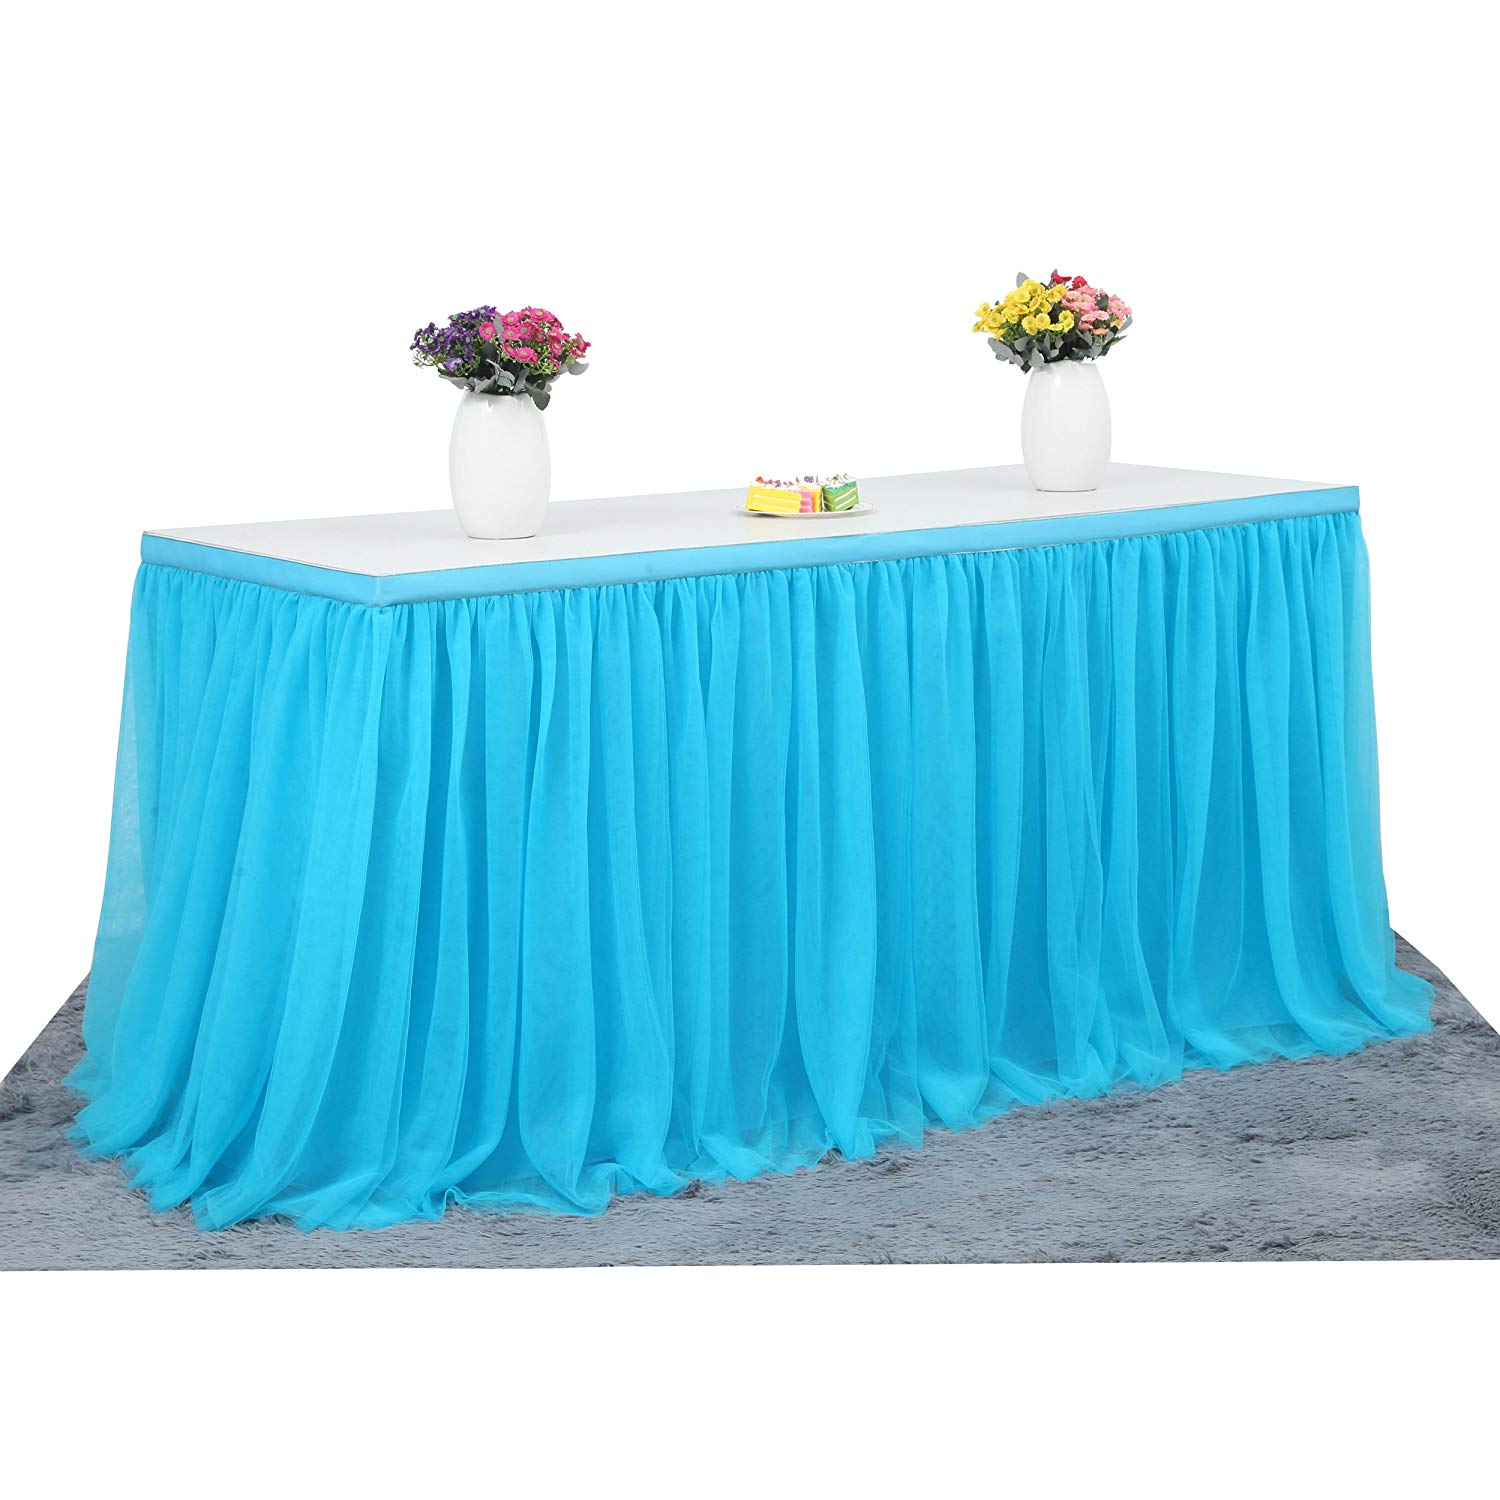 5 farver tulle bord nederdel bordservice bryllup fødselsdagsfest duge favordd bryllupsfest xmas baby shower fødselsdag indretning: Blå